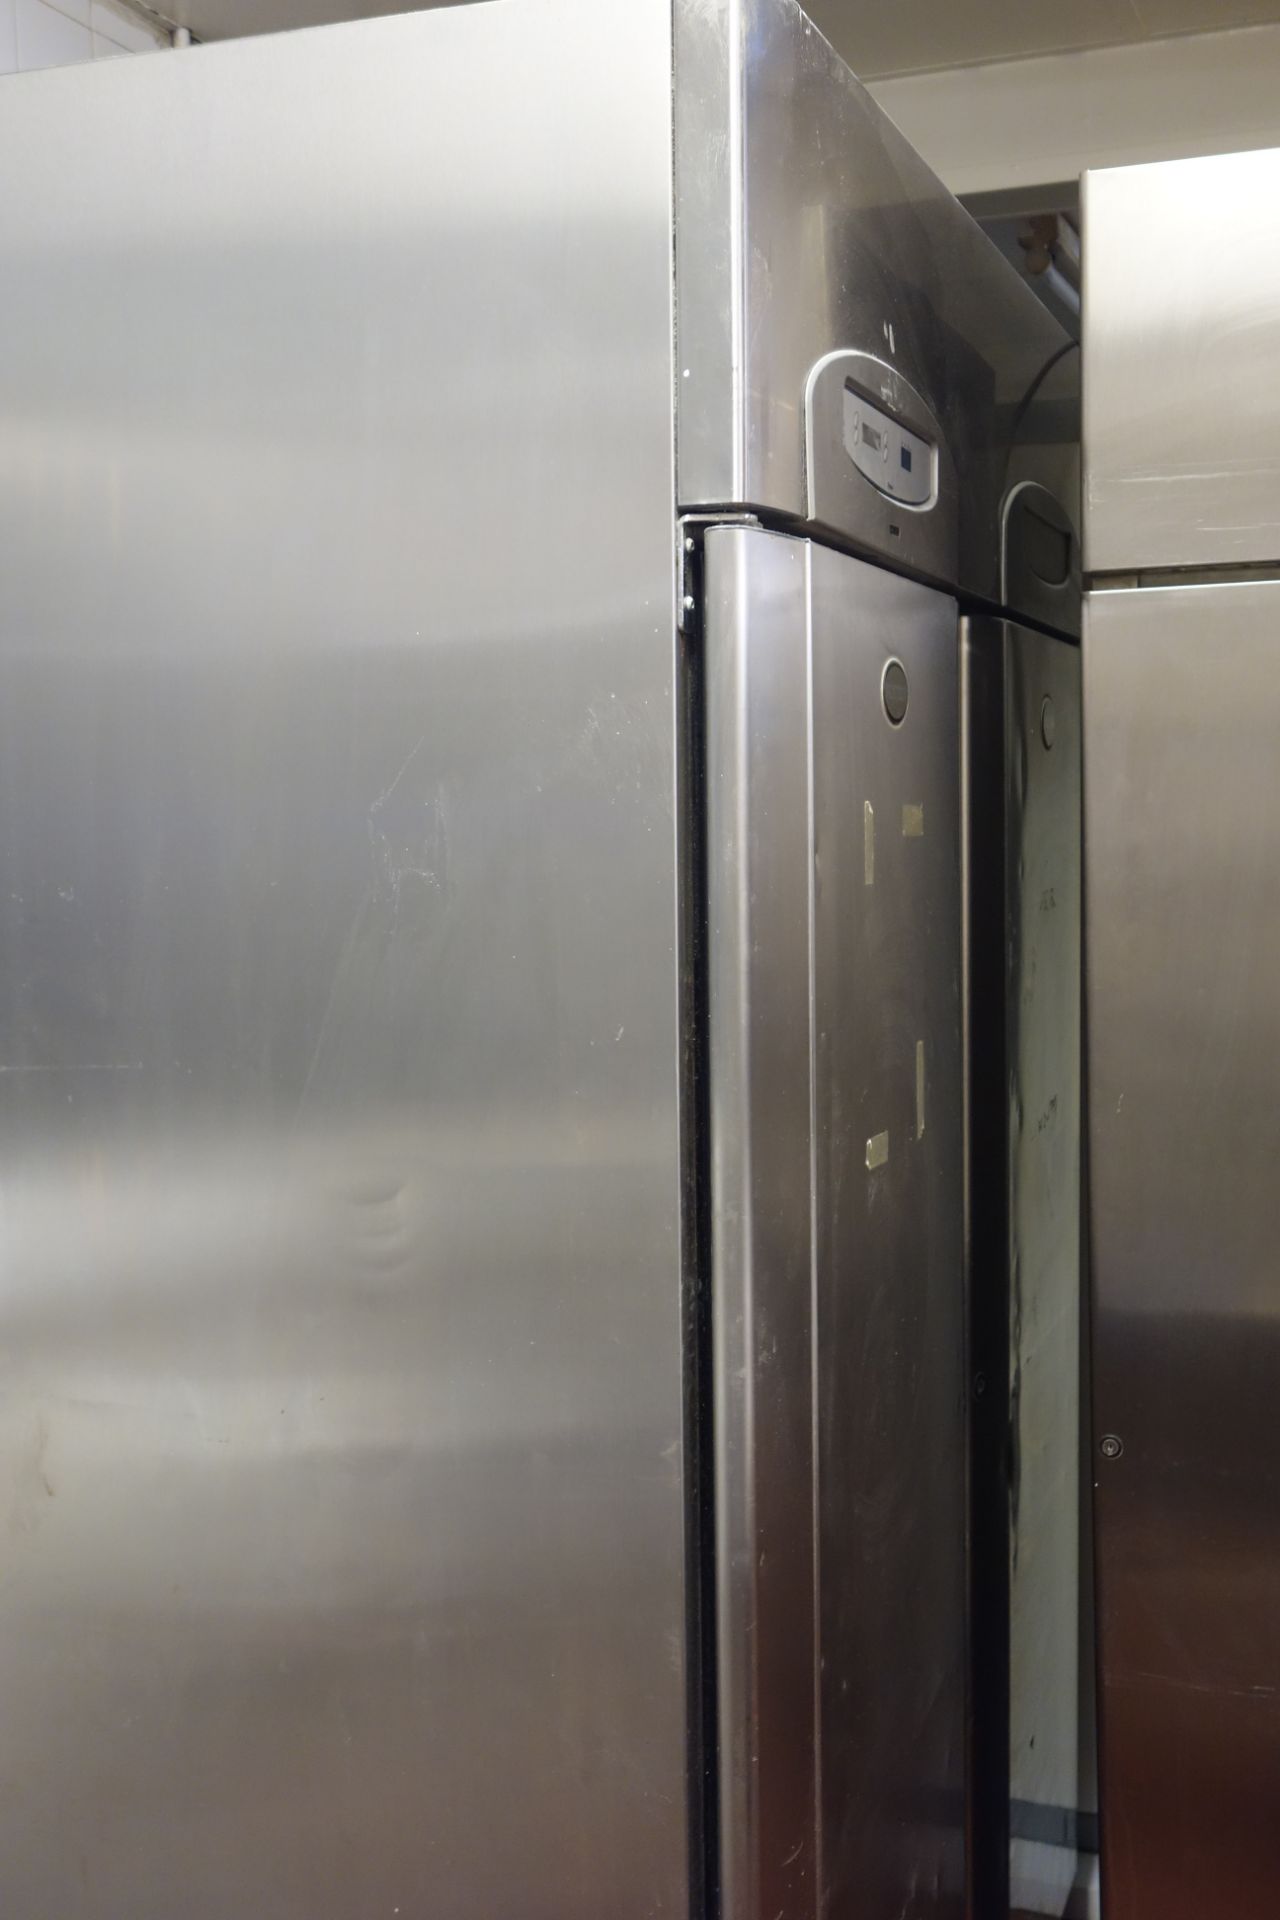 Foster double commercial rack freezer, W140cm, H209cm, D93cm, - Image 2 of 2